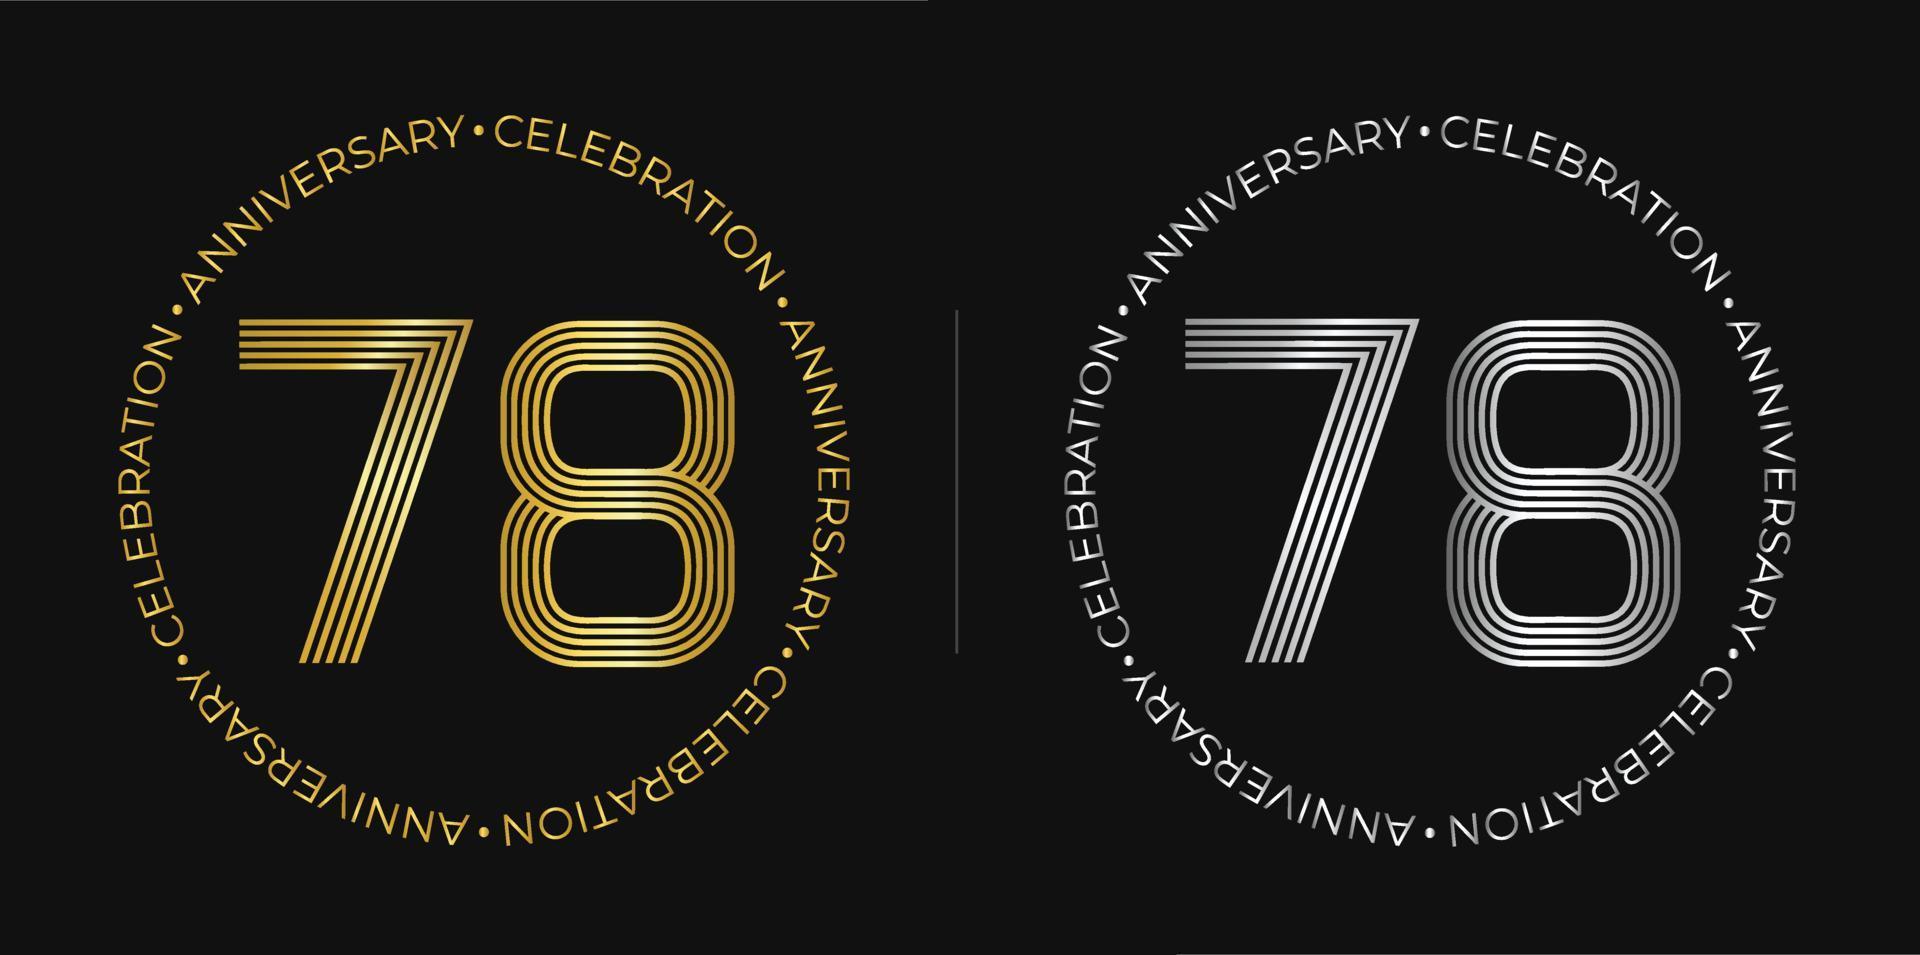 78 cumpleaños. cartel de celebración del aniversario de setenta y ocho años en colores dorado y plateado. logo circular con diseño de números originales en líneas elegantes. vector